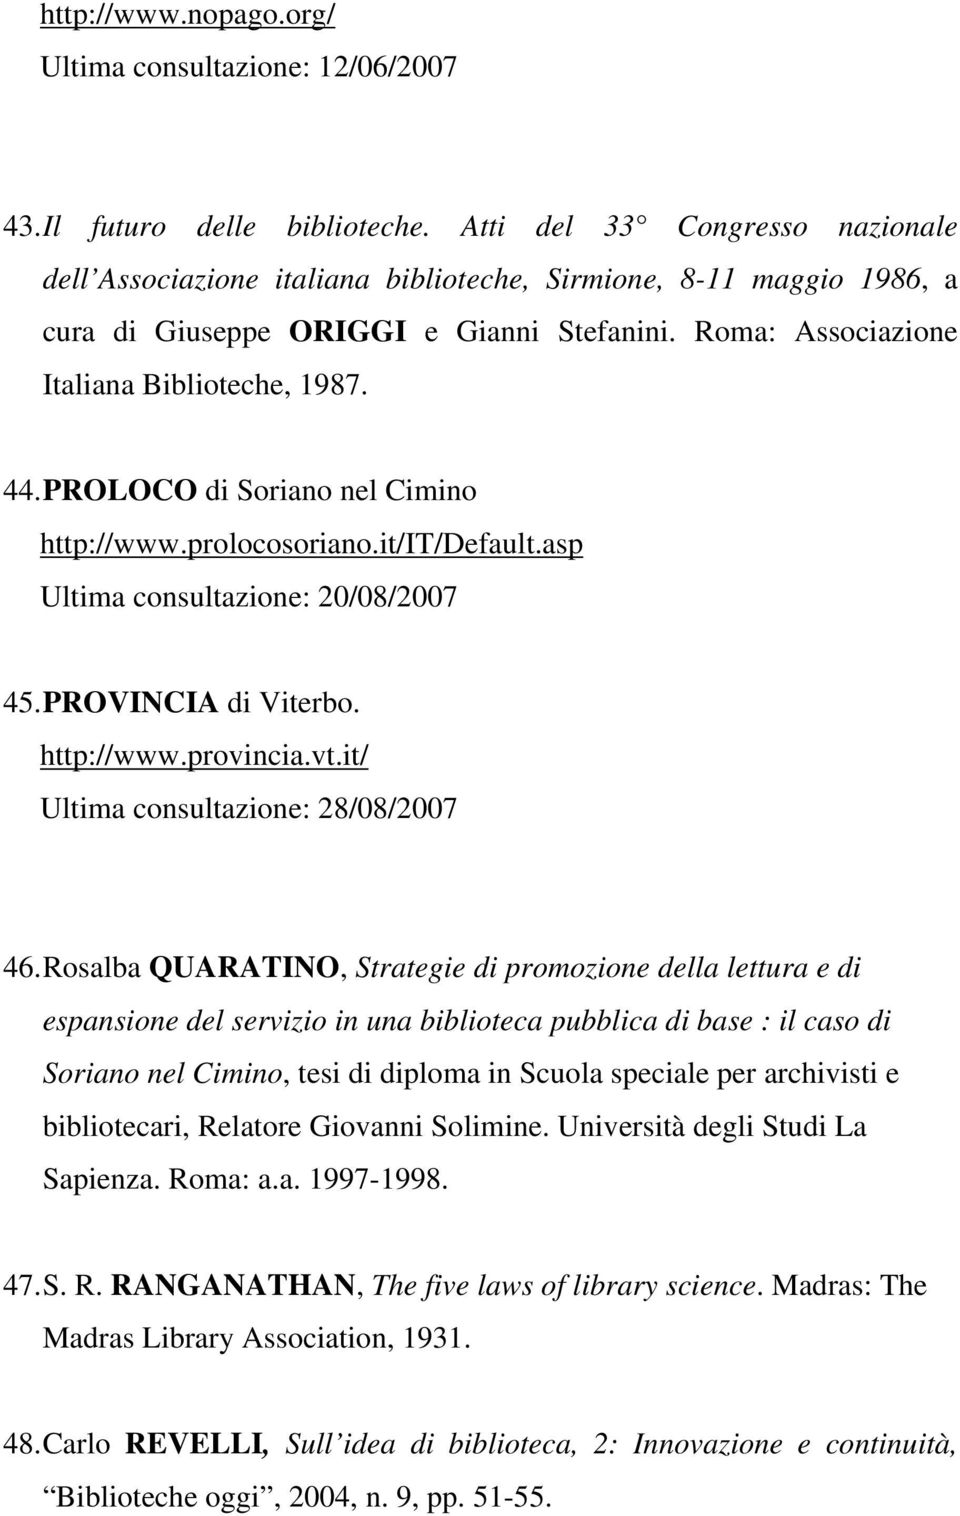 PROLOCO di Soriano nel Cimino http://www.prolocosoriano.it/it/default.asp Ultima consultazione: 20/08/2007 45. PROVINCIA di Viterbo. http://www.provincia.vt.it/ Ultima consultazione: 28/08/2007 46.